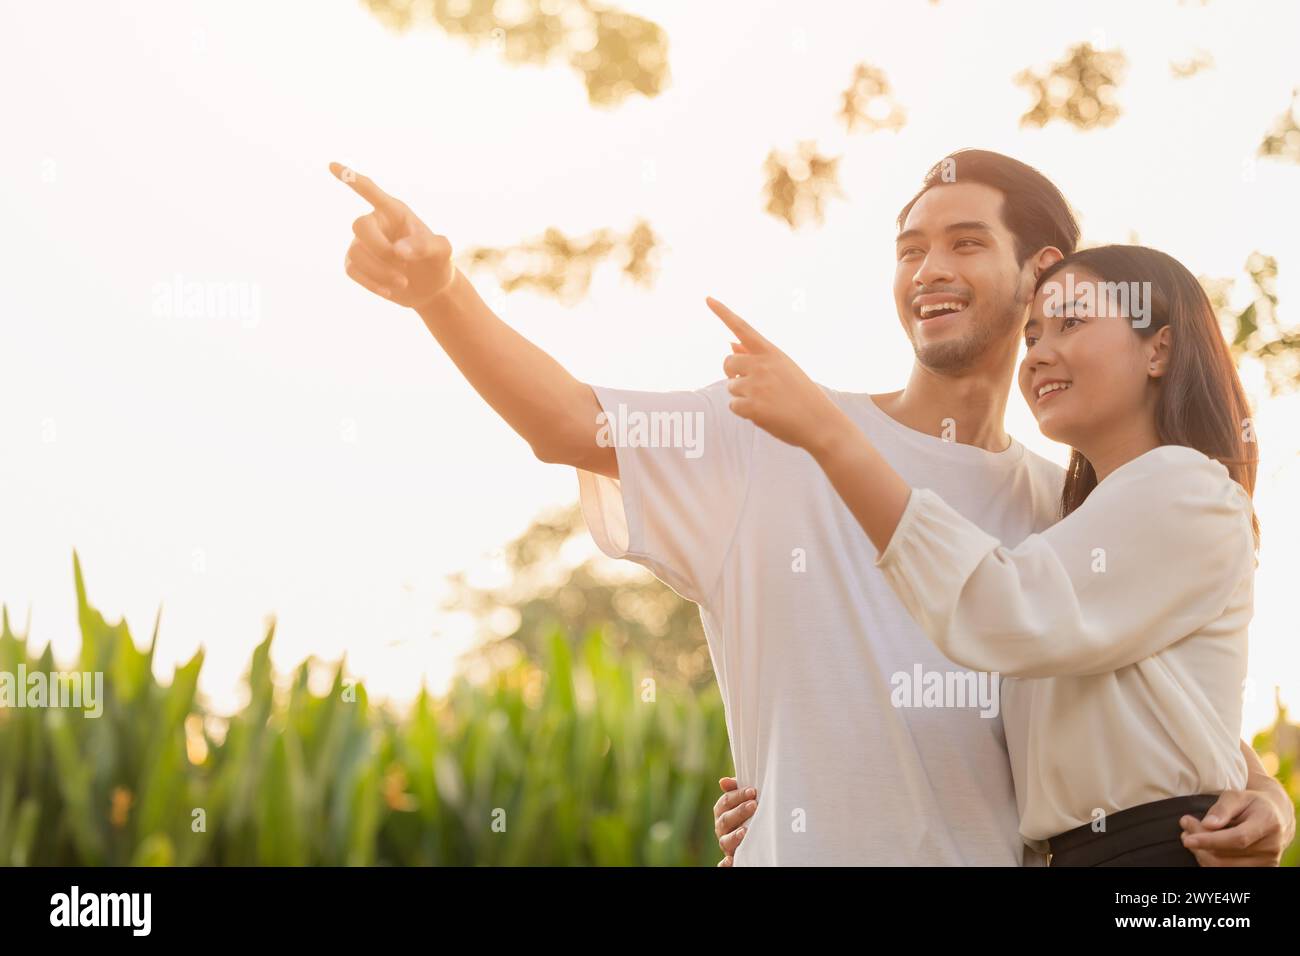 coppia adolescente in piedi felice sorridere insieme parco all'aperto sole che splende mano puntando in alto per la pianificazione della vita futuro concetto di visione aziendale assicurativa Foto Stock